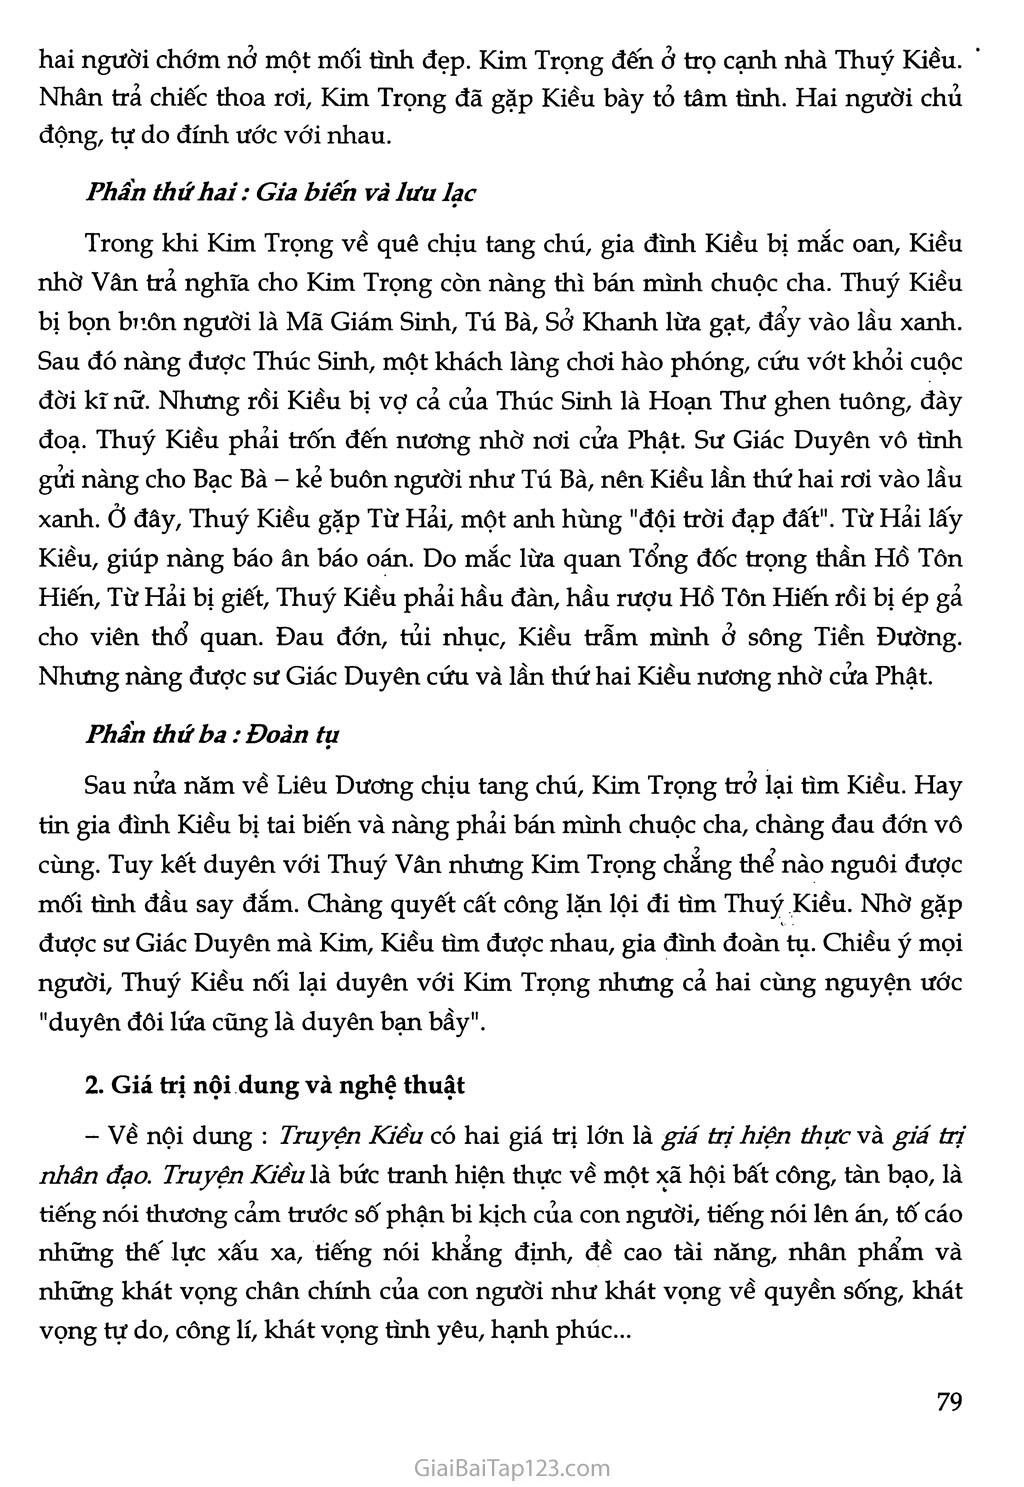 Truyện Kiều của Nguyễn Du trang 4